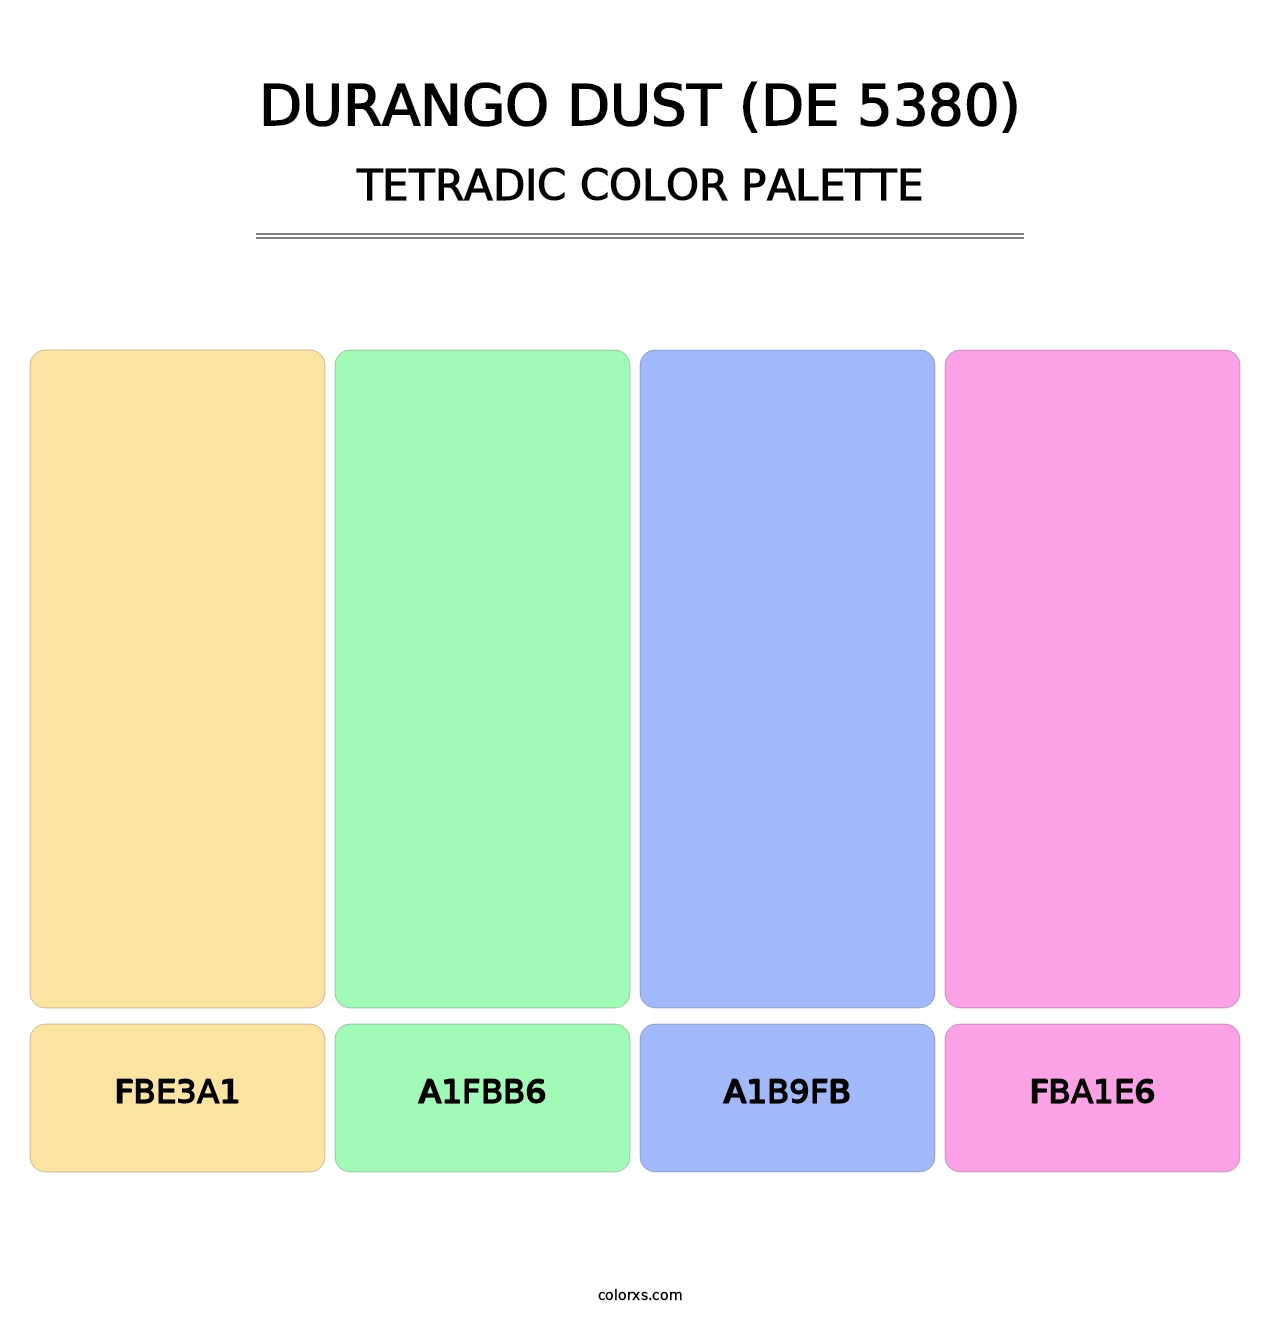 Durango Dust (DE 5380) - Tetradic Color Palette